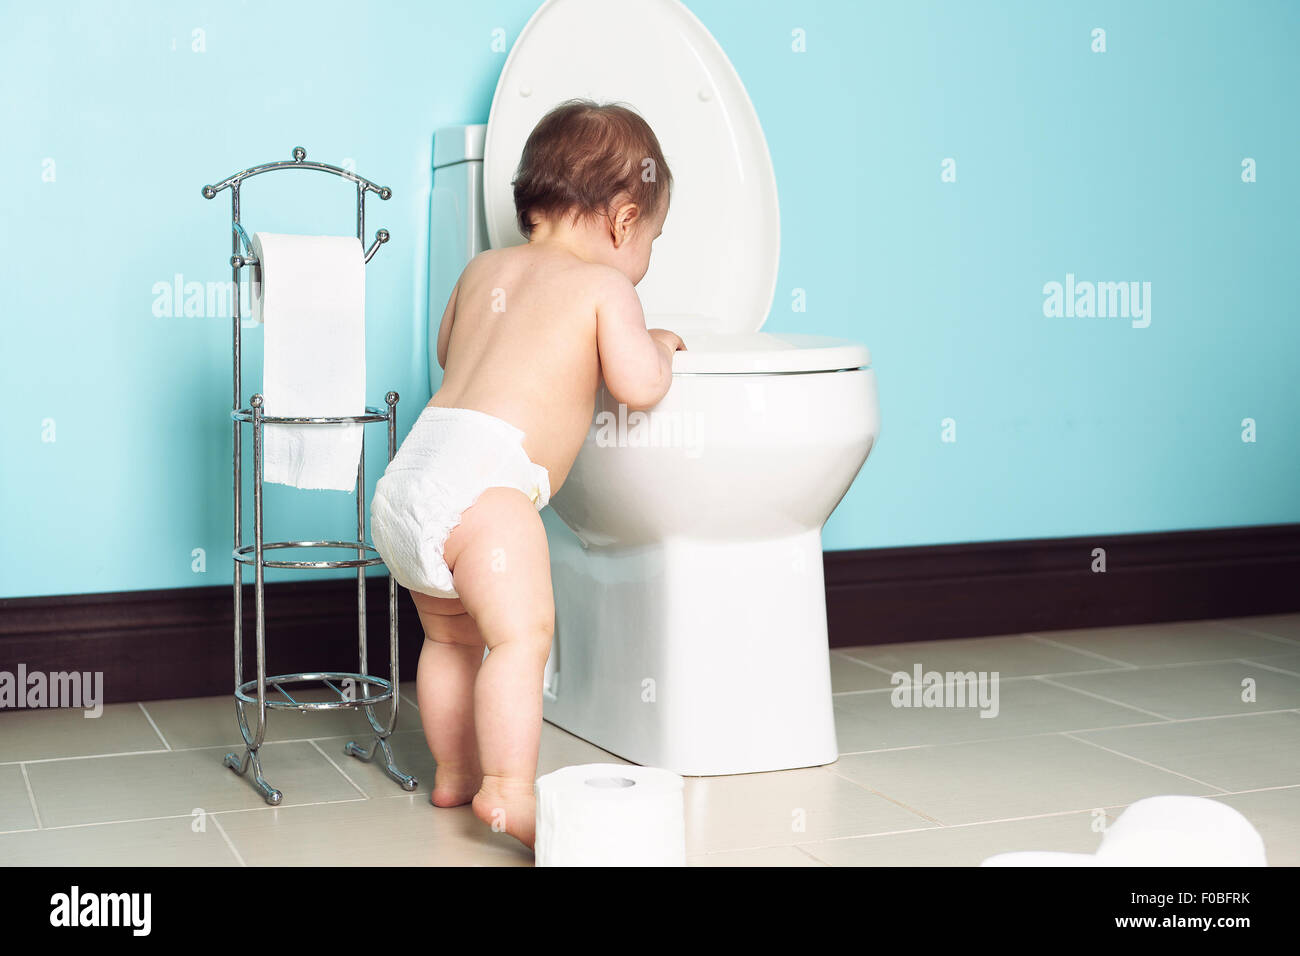 Niño en el baño mirar el wc Foto de stock